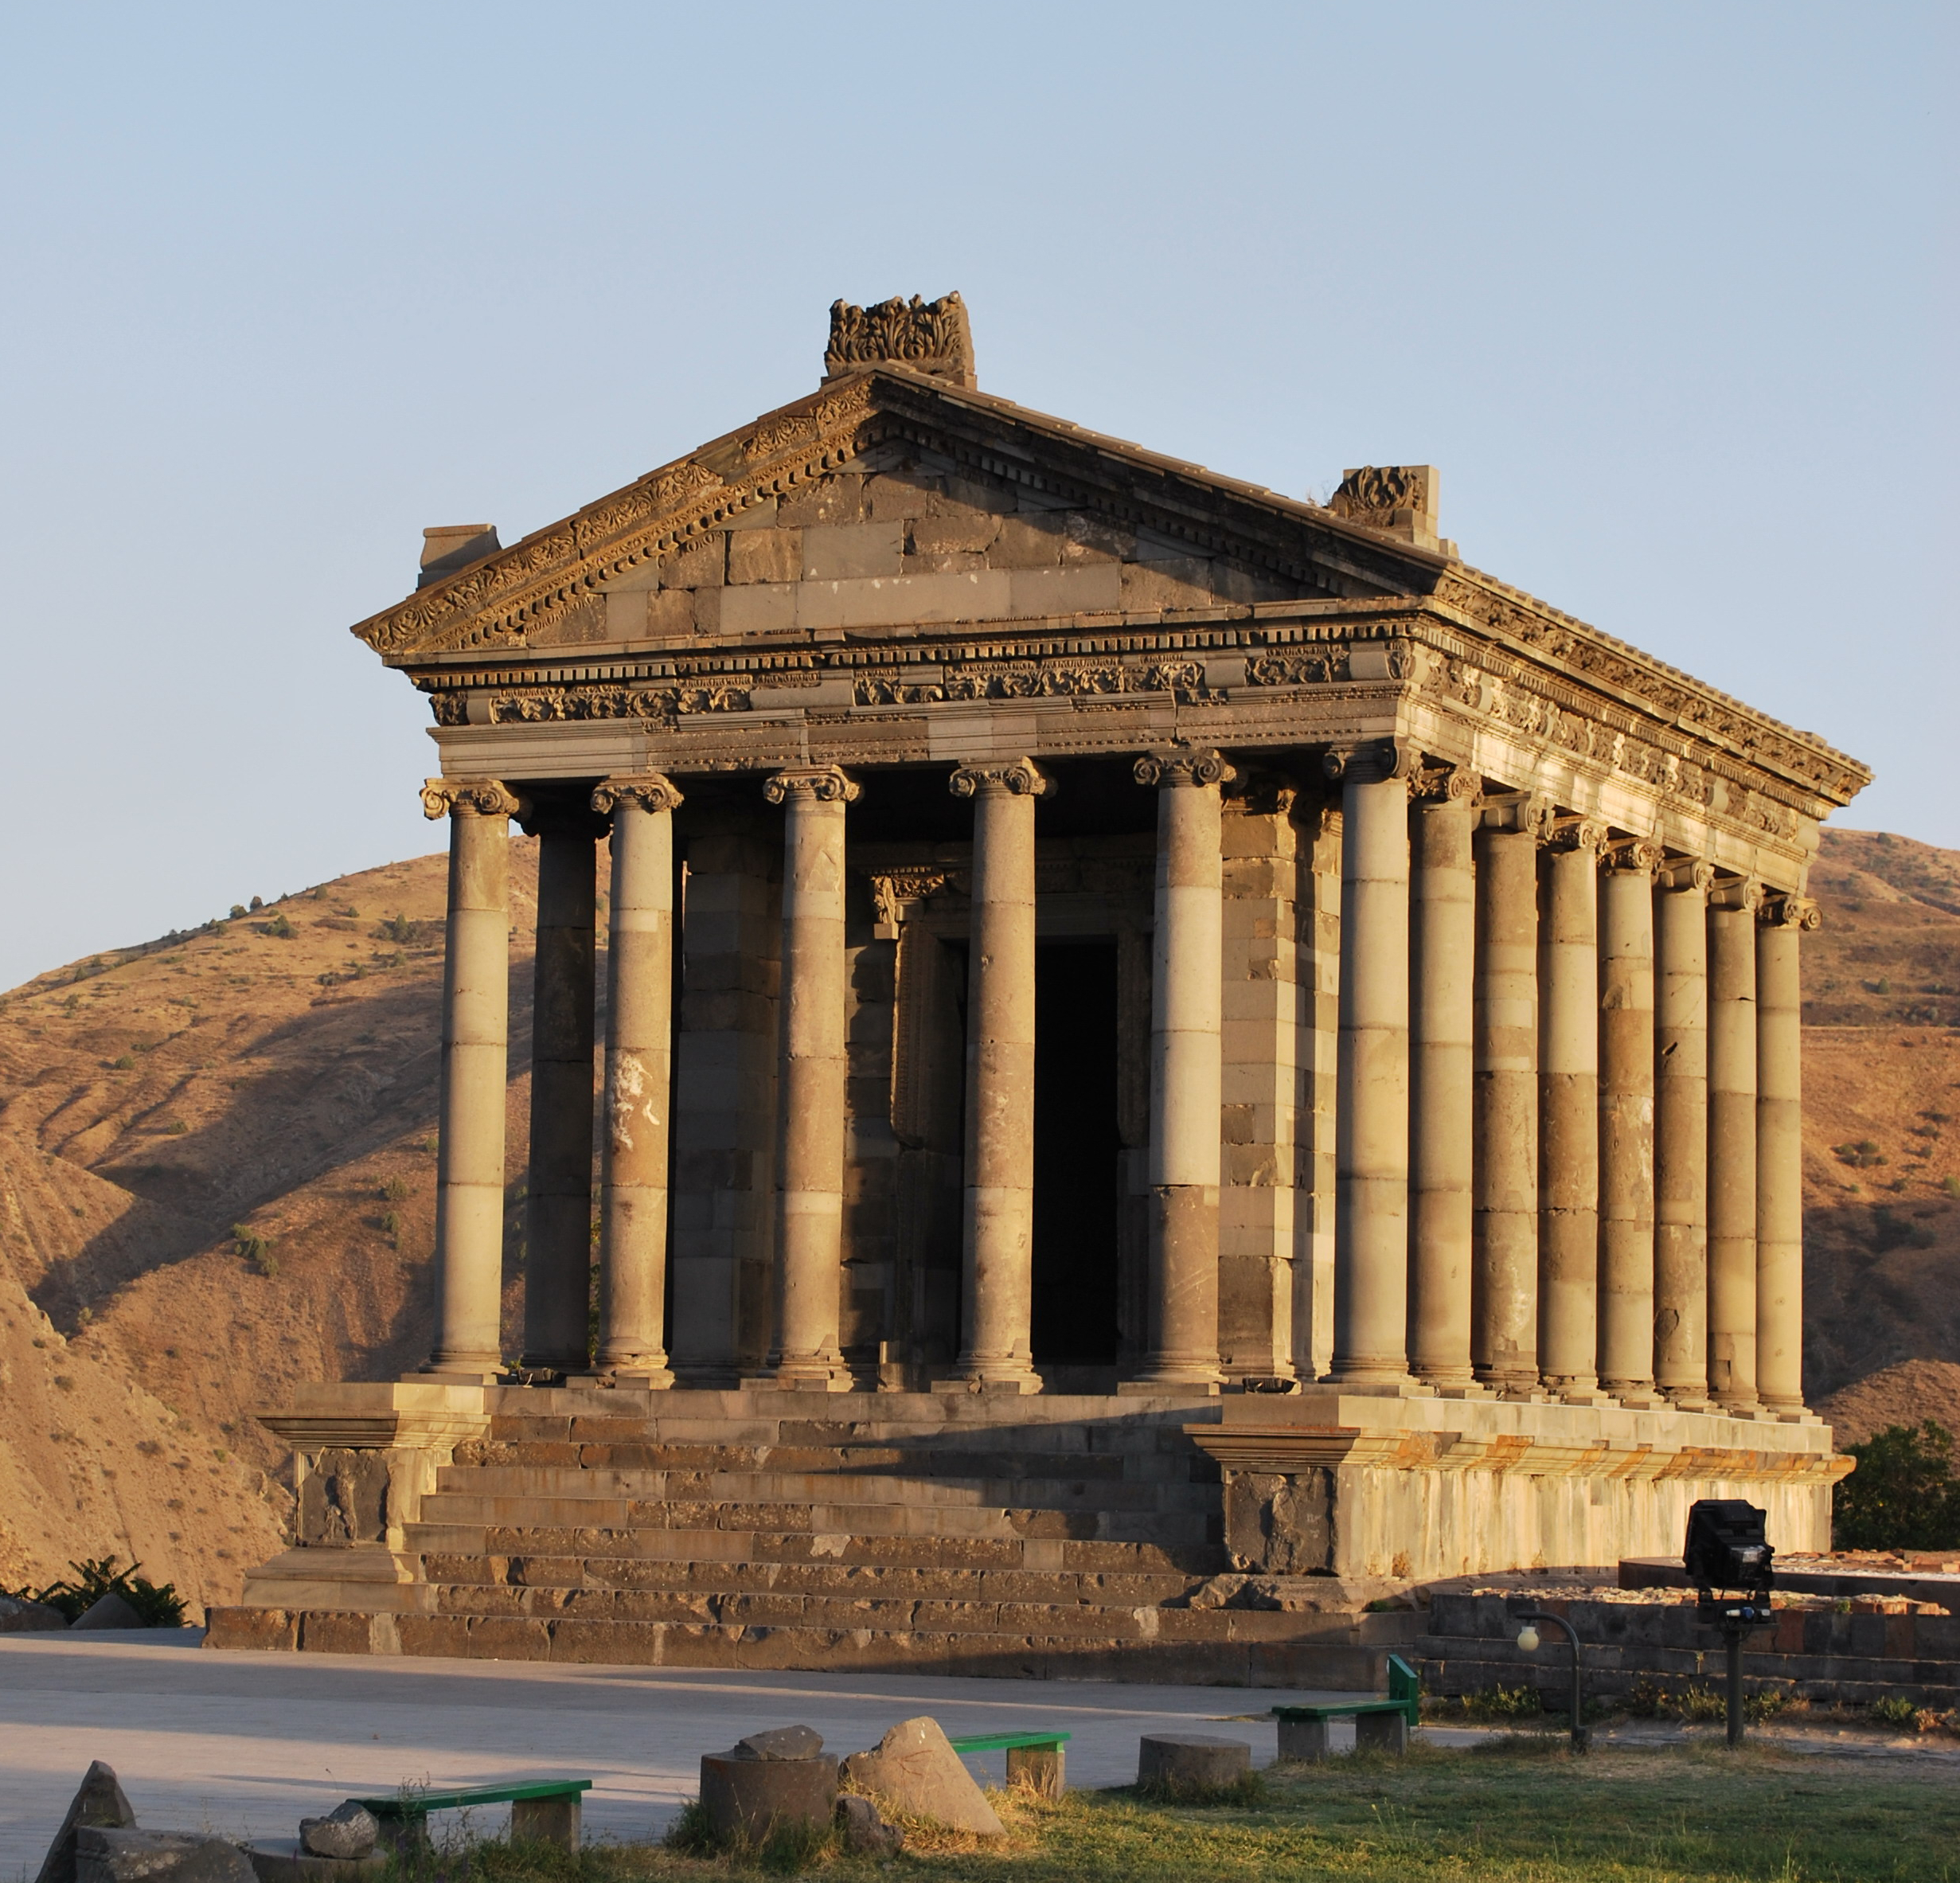 Ο ελληνιστικός ναός του Γκαρνί. Χτίστηκε πιθανότατα από τον βασιλιά Τιριδάτη Α΄ στον πρώτο αιώνα μ.Χ. ως ναός του θεού Ήλιου Μιχρ. Ο ναός βρίσκεται στην άκρη ενός τριγωνικού γκρεμού και είναι μέρος του φρουρίου της Γκαρνί, από τα παλαιότερα κάστρα στην Αρμενία (πηγή wikipedia/Yerevantsi)